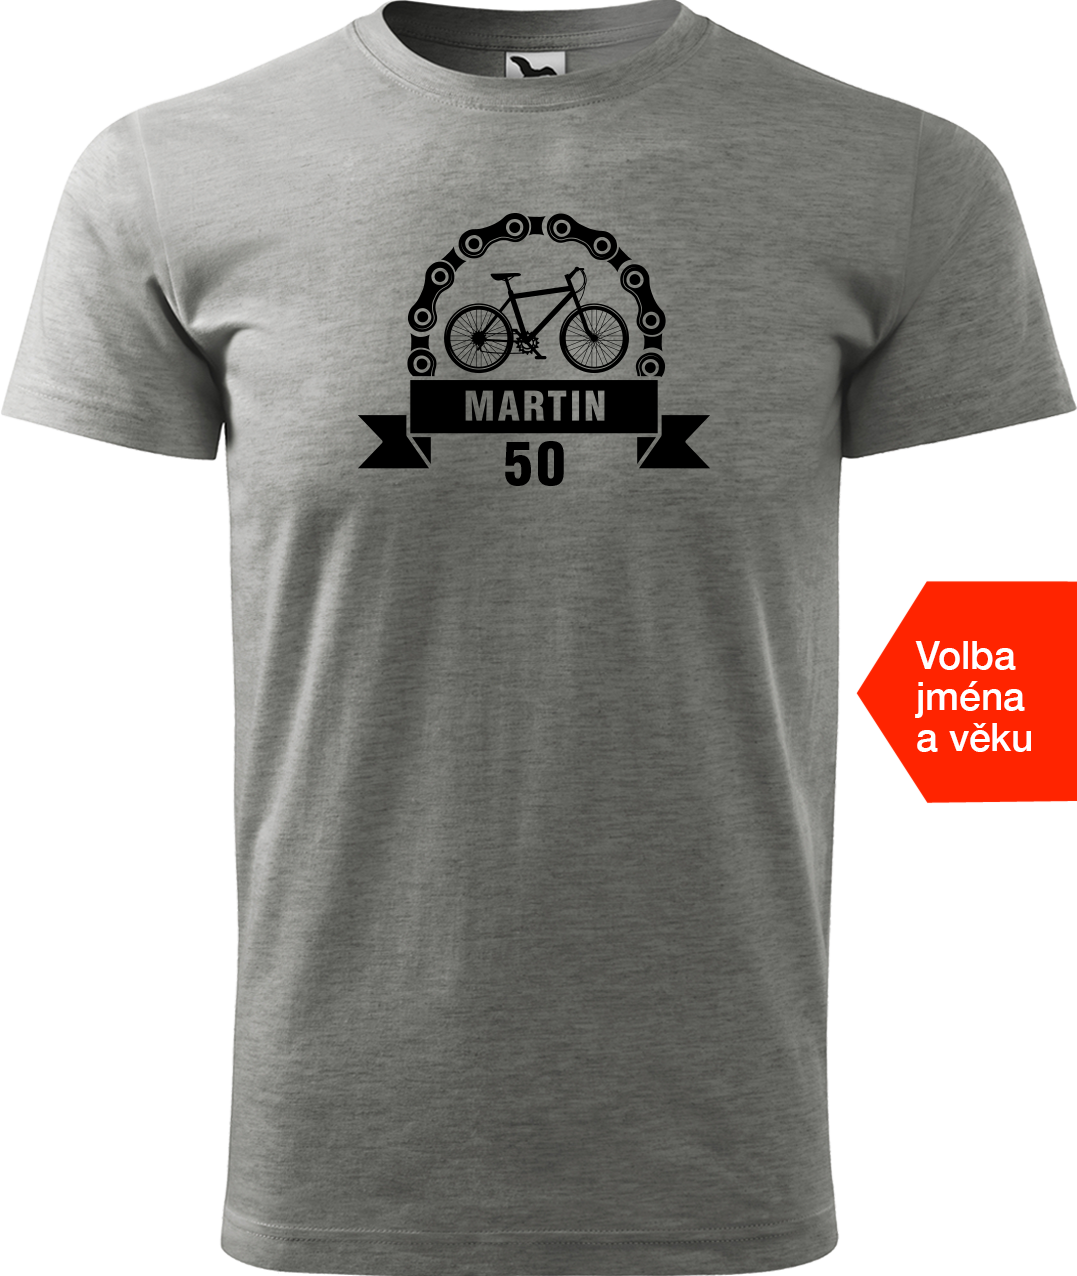 Pánské tričko pro cyklistu se jménem a věkem - Blahopřání Velikost: 2XL, Barva: Tmavě šedý melír (12)